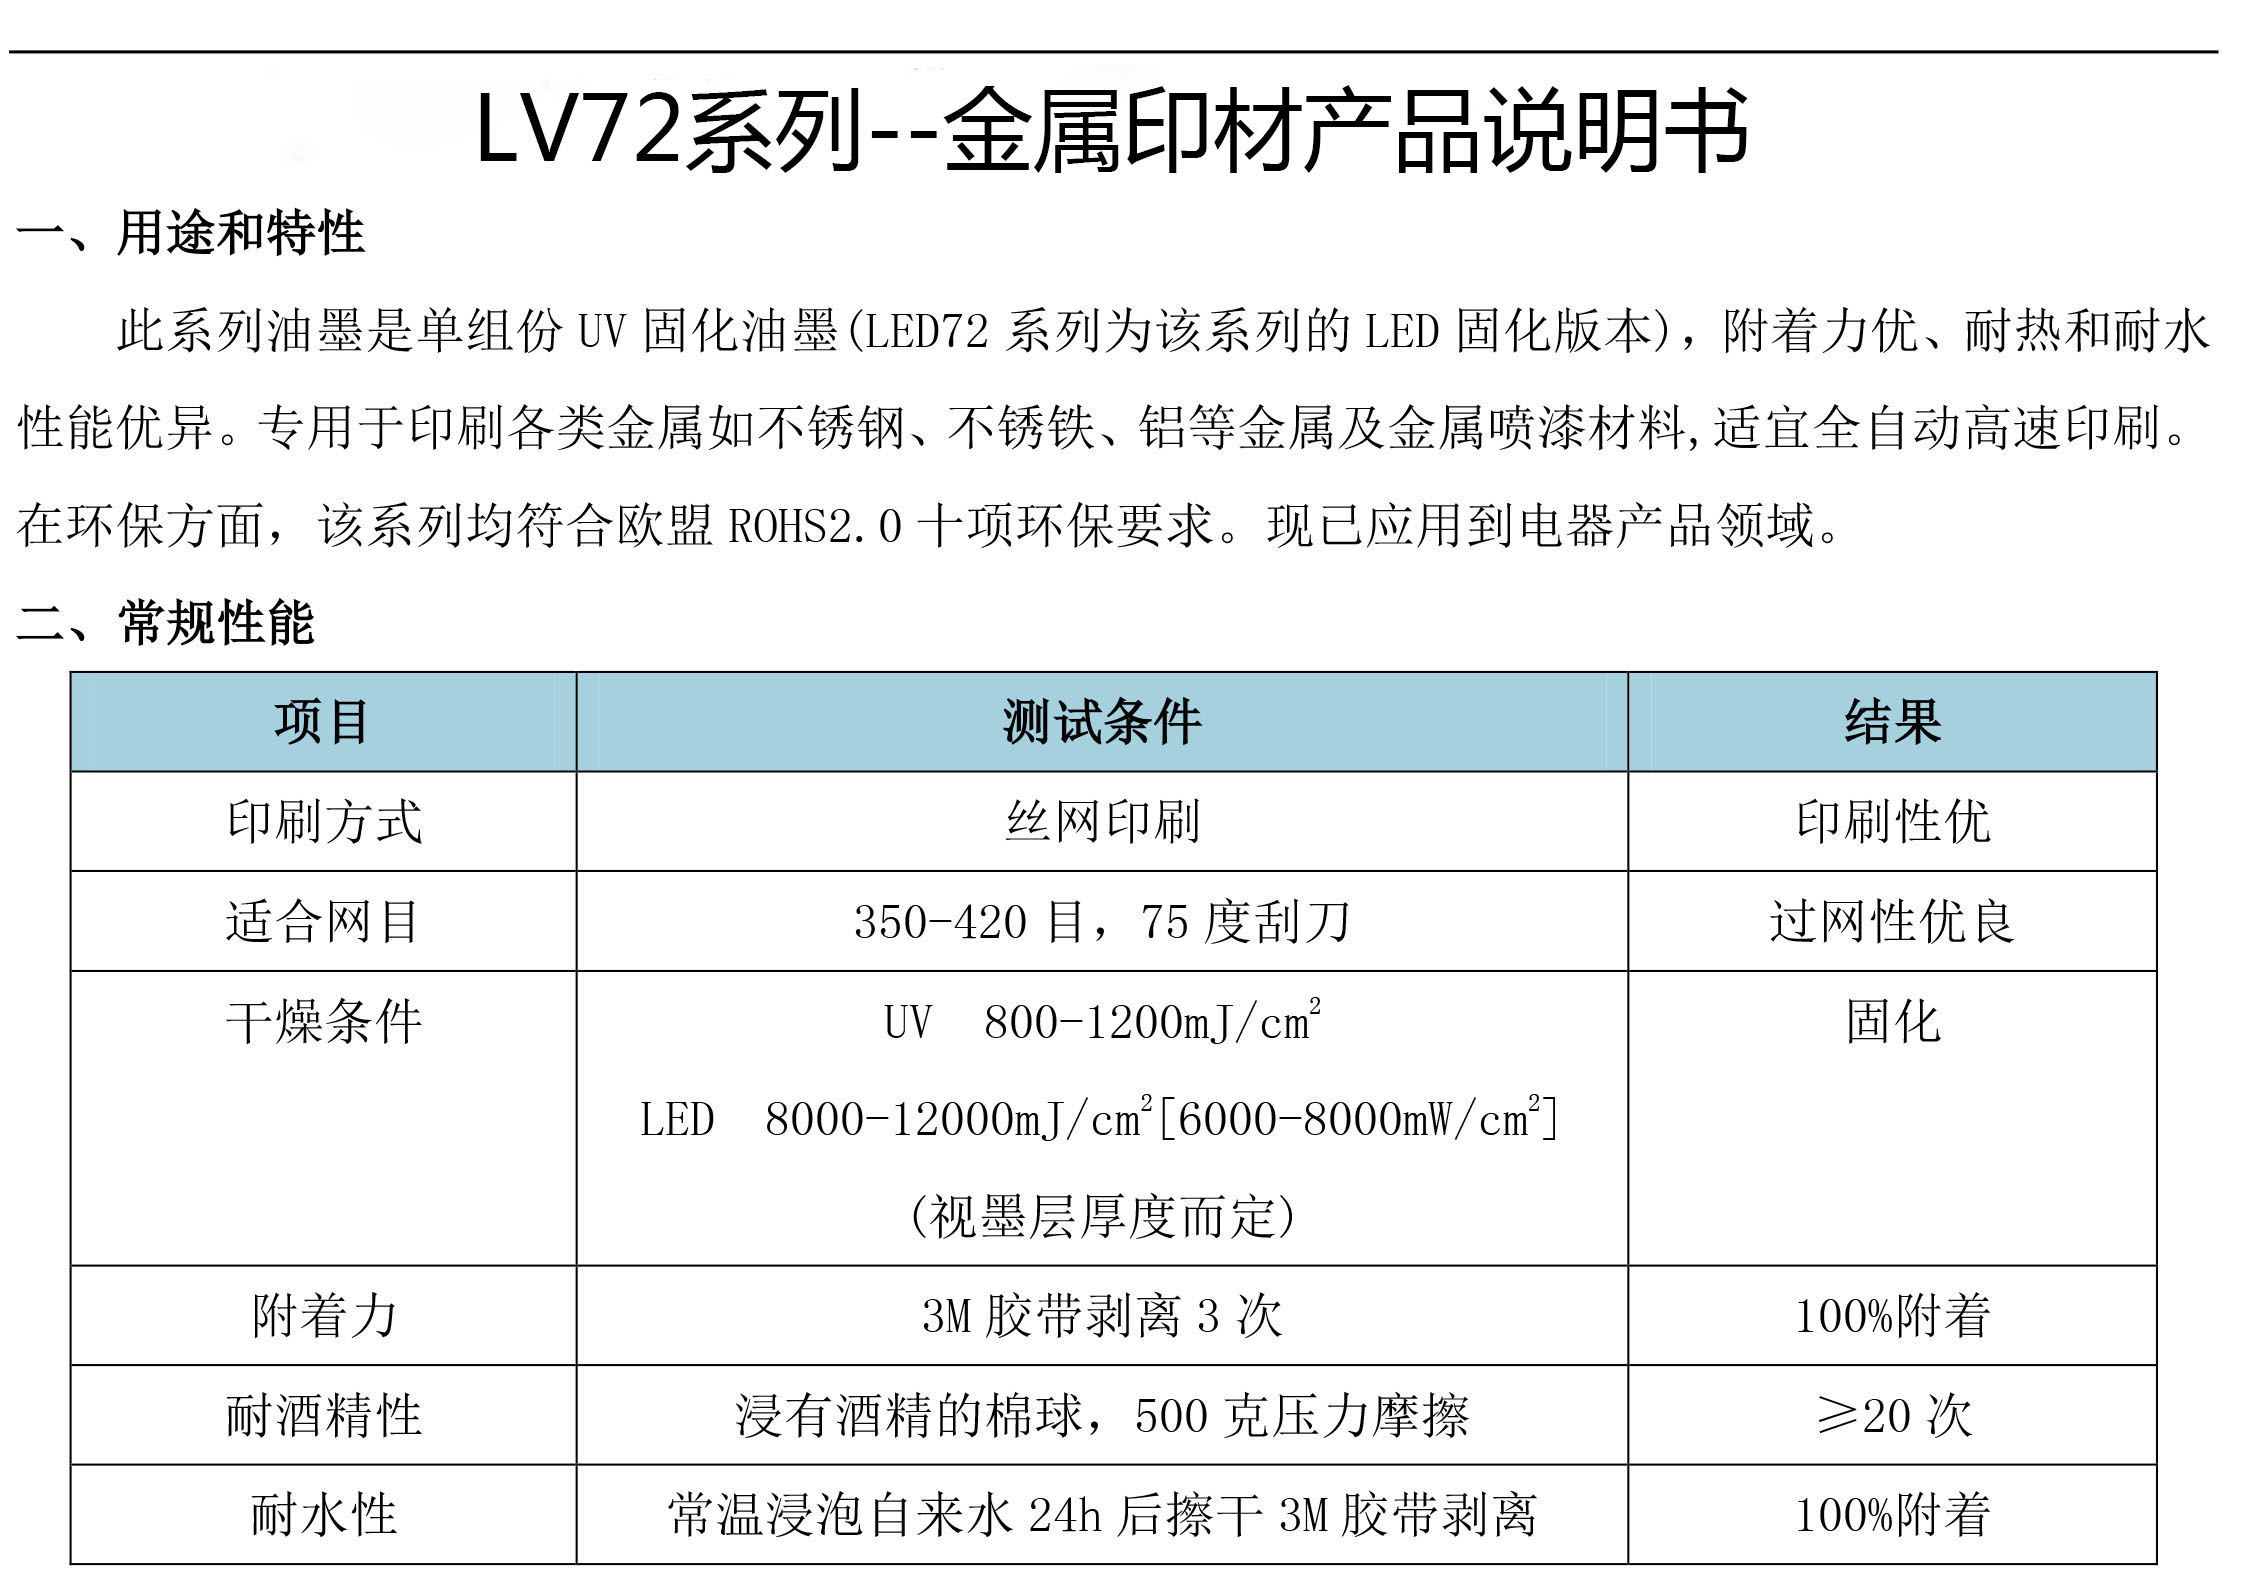 LV72系列--金属印材、金属喷涂、金属喷粉、金属电镀(图3)